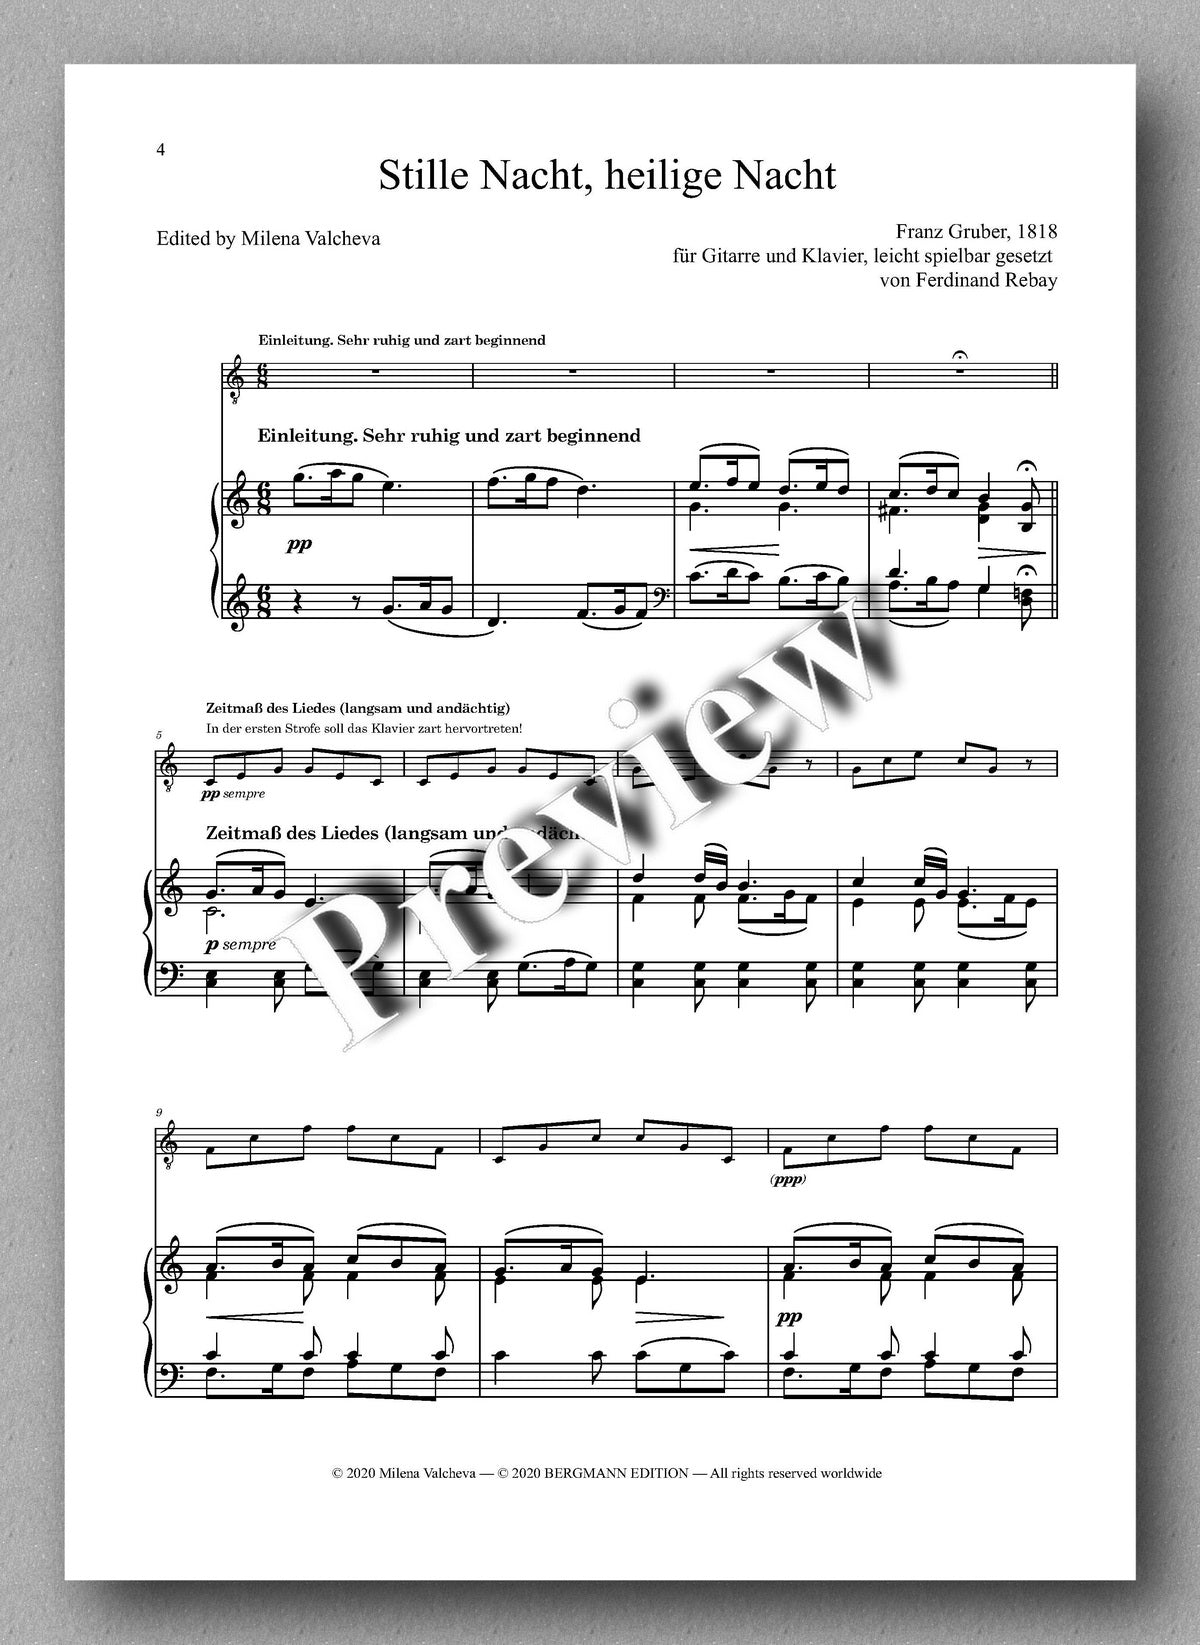 Rebay [151], Gruber, Stille Nacht, heilige Nacht - music score 1